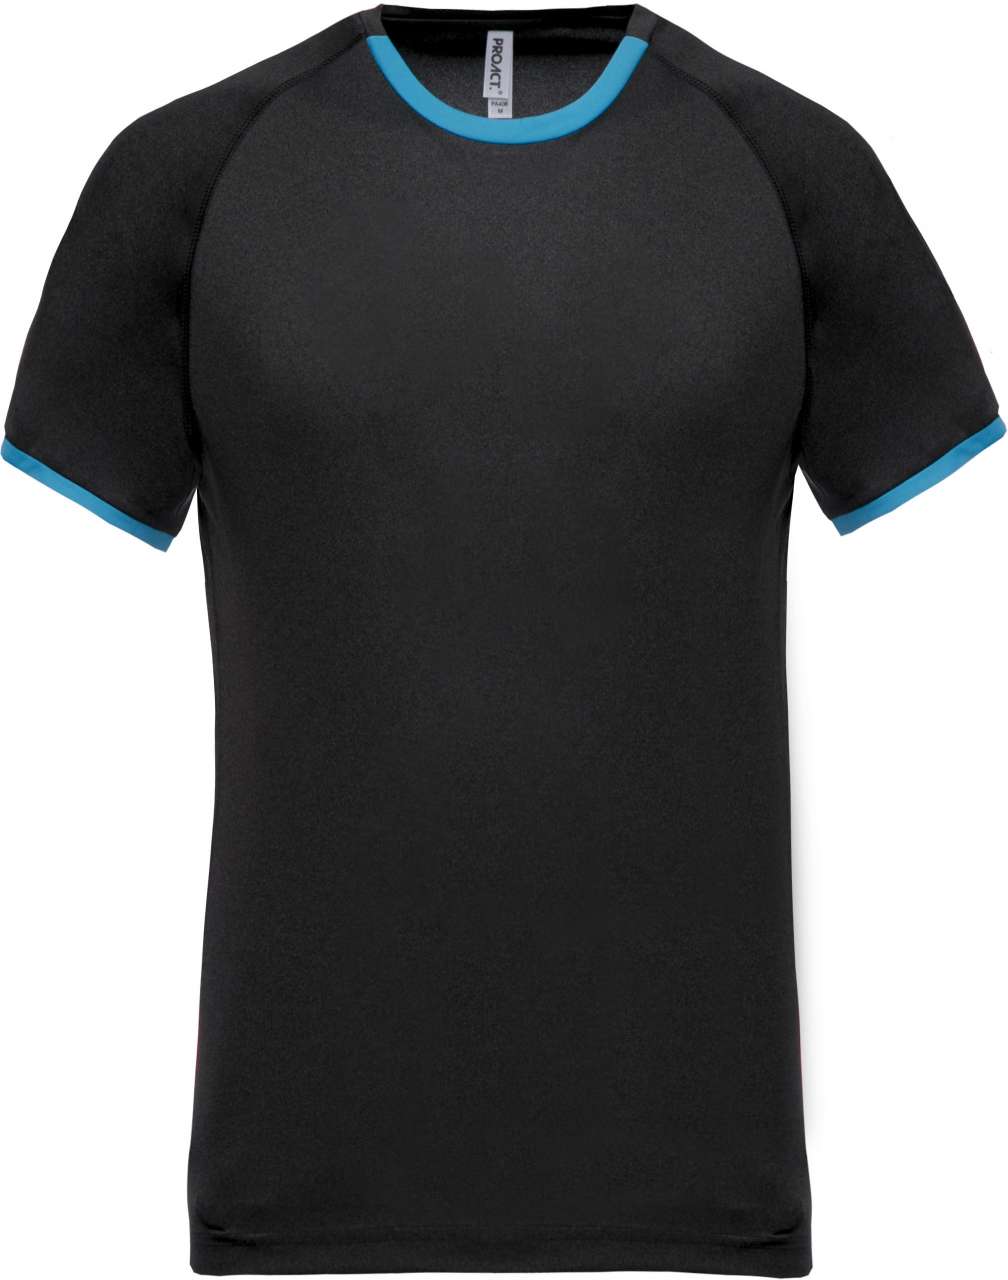 Proact Herren T-Shirt Kurzarm Baumwolle Rundhals Sport Shirt Fitness